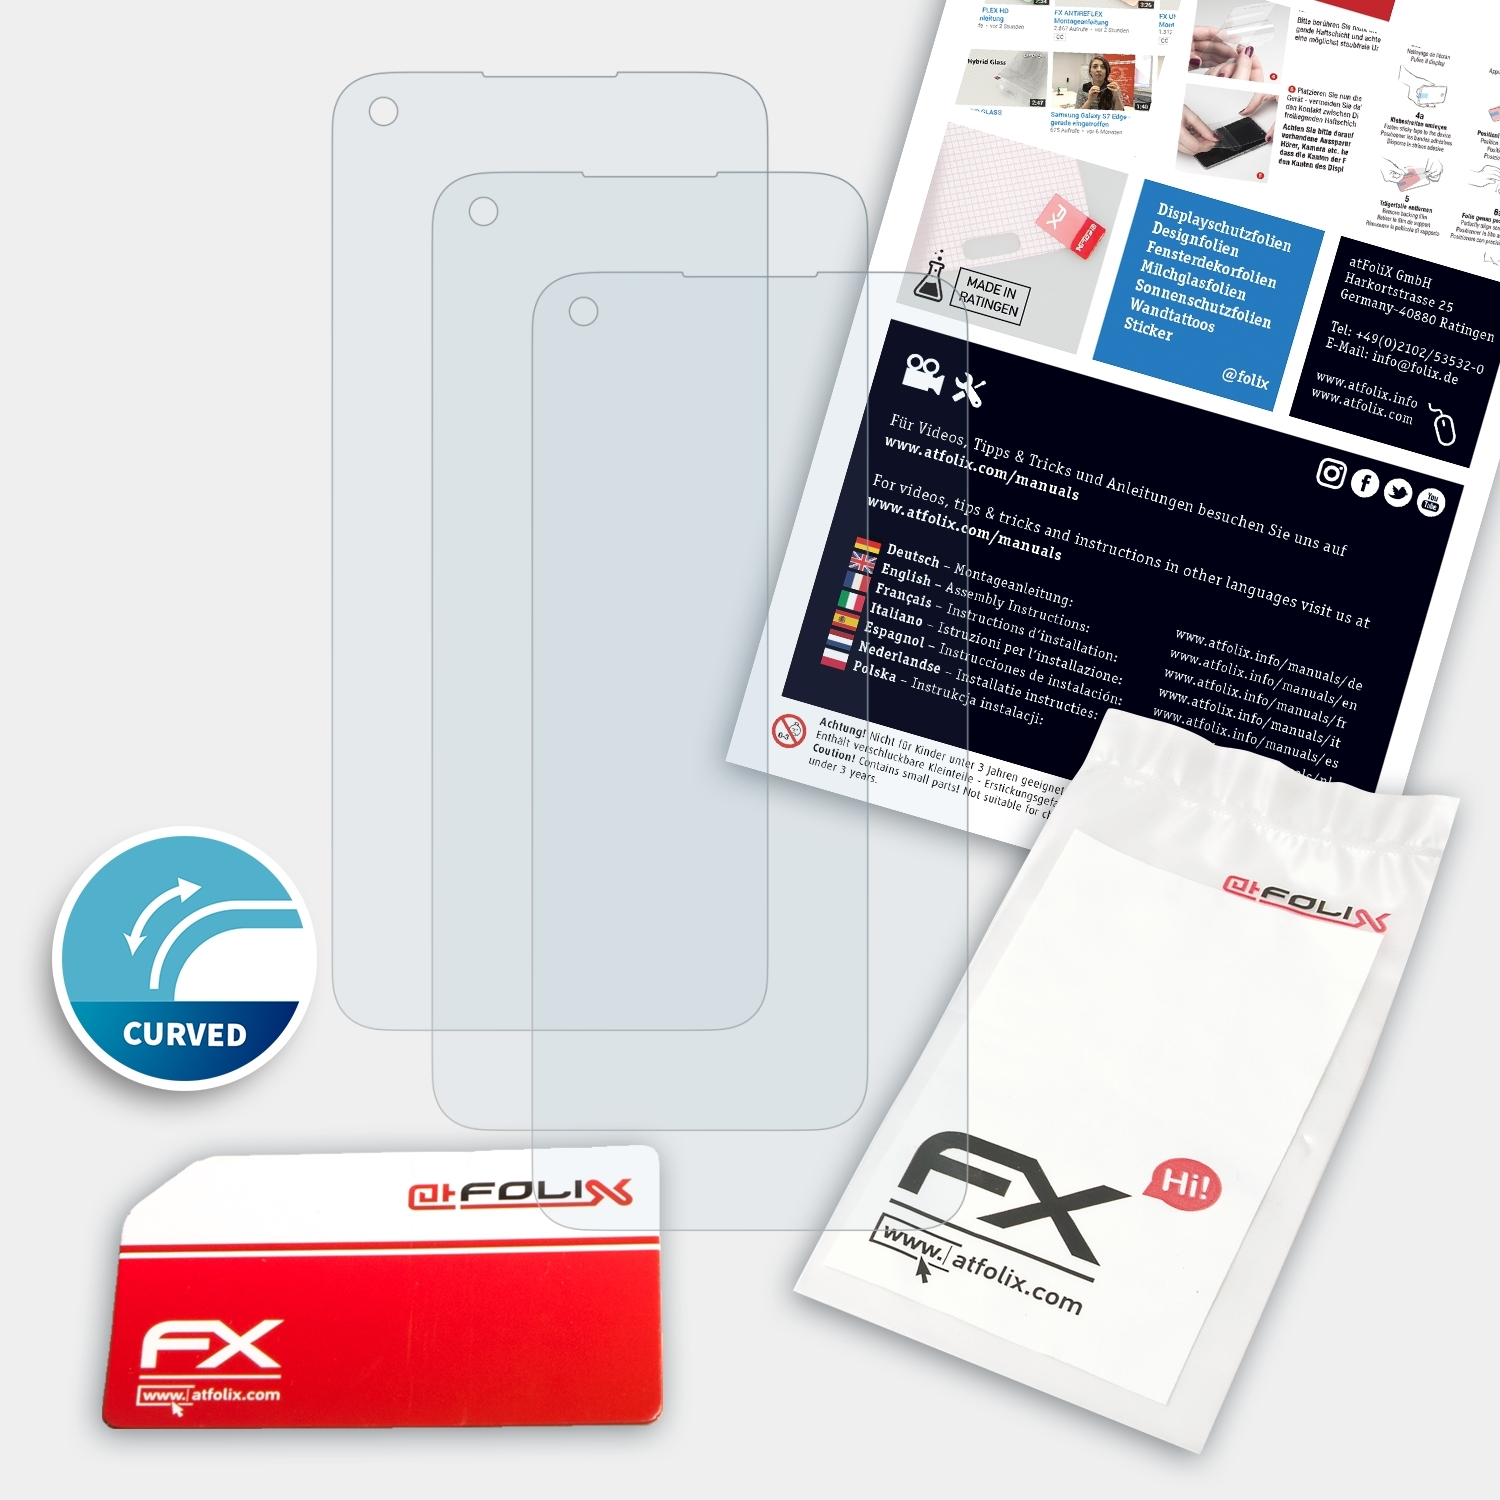 3x Nord N100) Displayschutz(für FX-ActiFleX ATFOLIX OnePlus